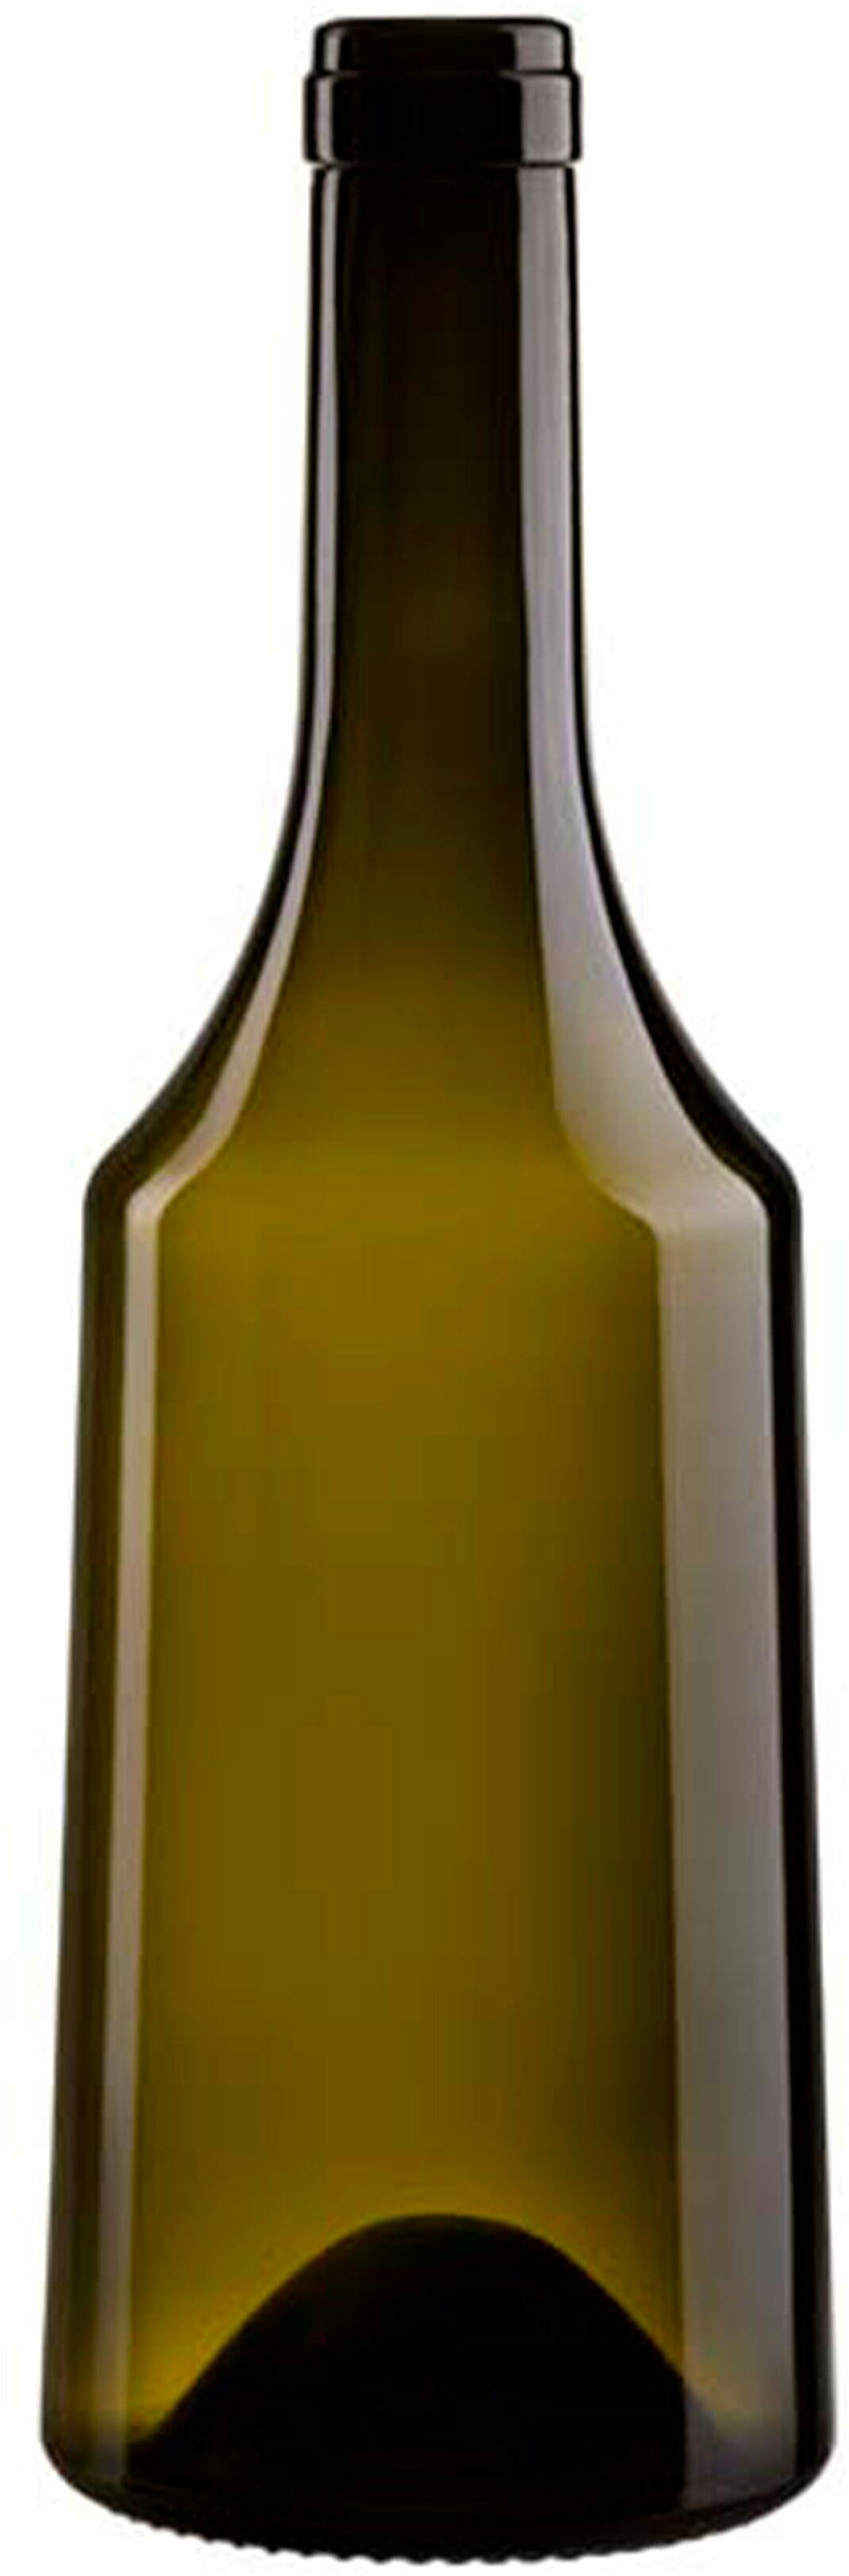 Bottle BORG AEMILIA 750 S VA